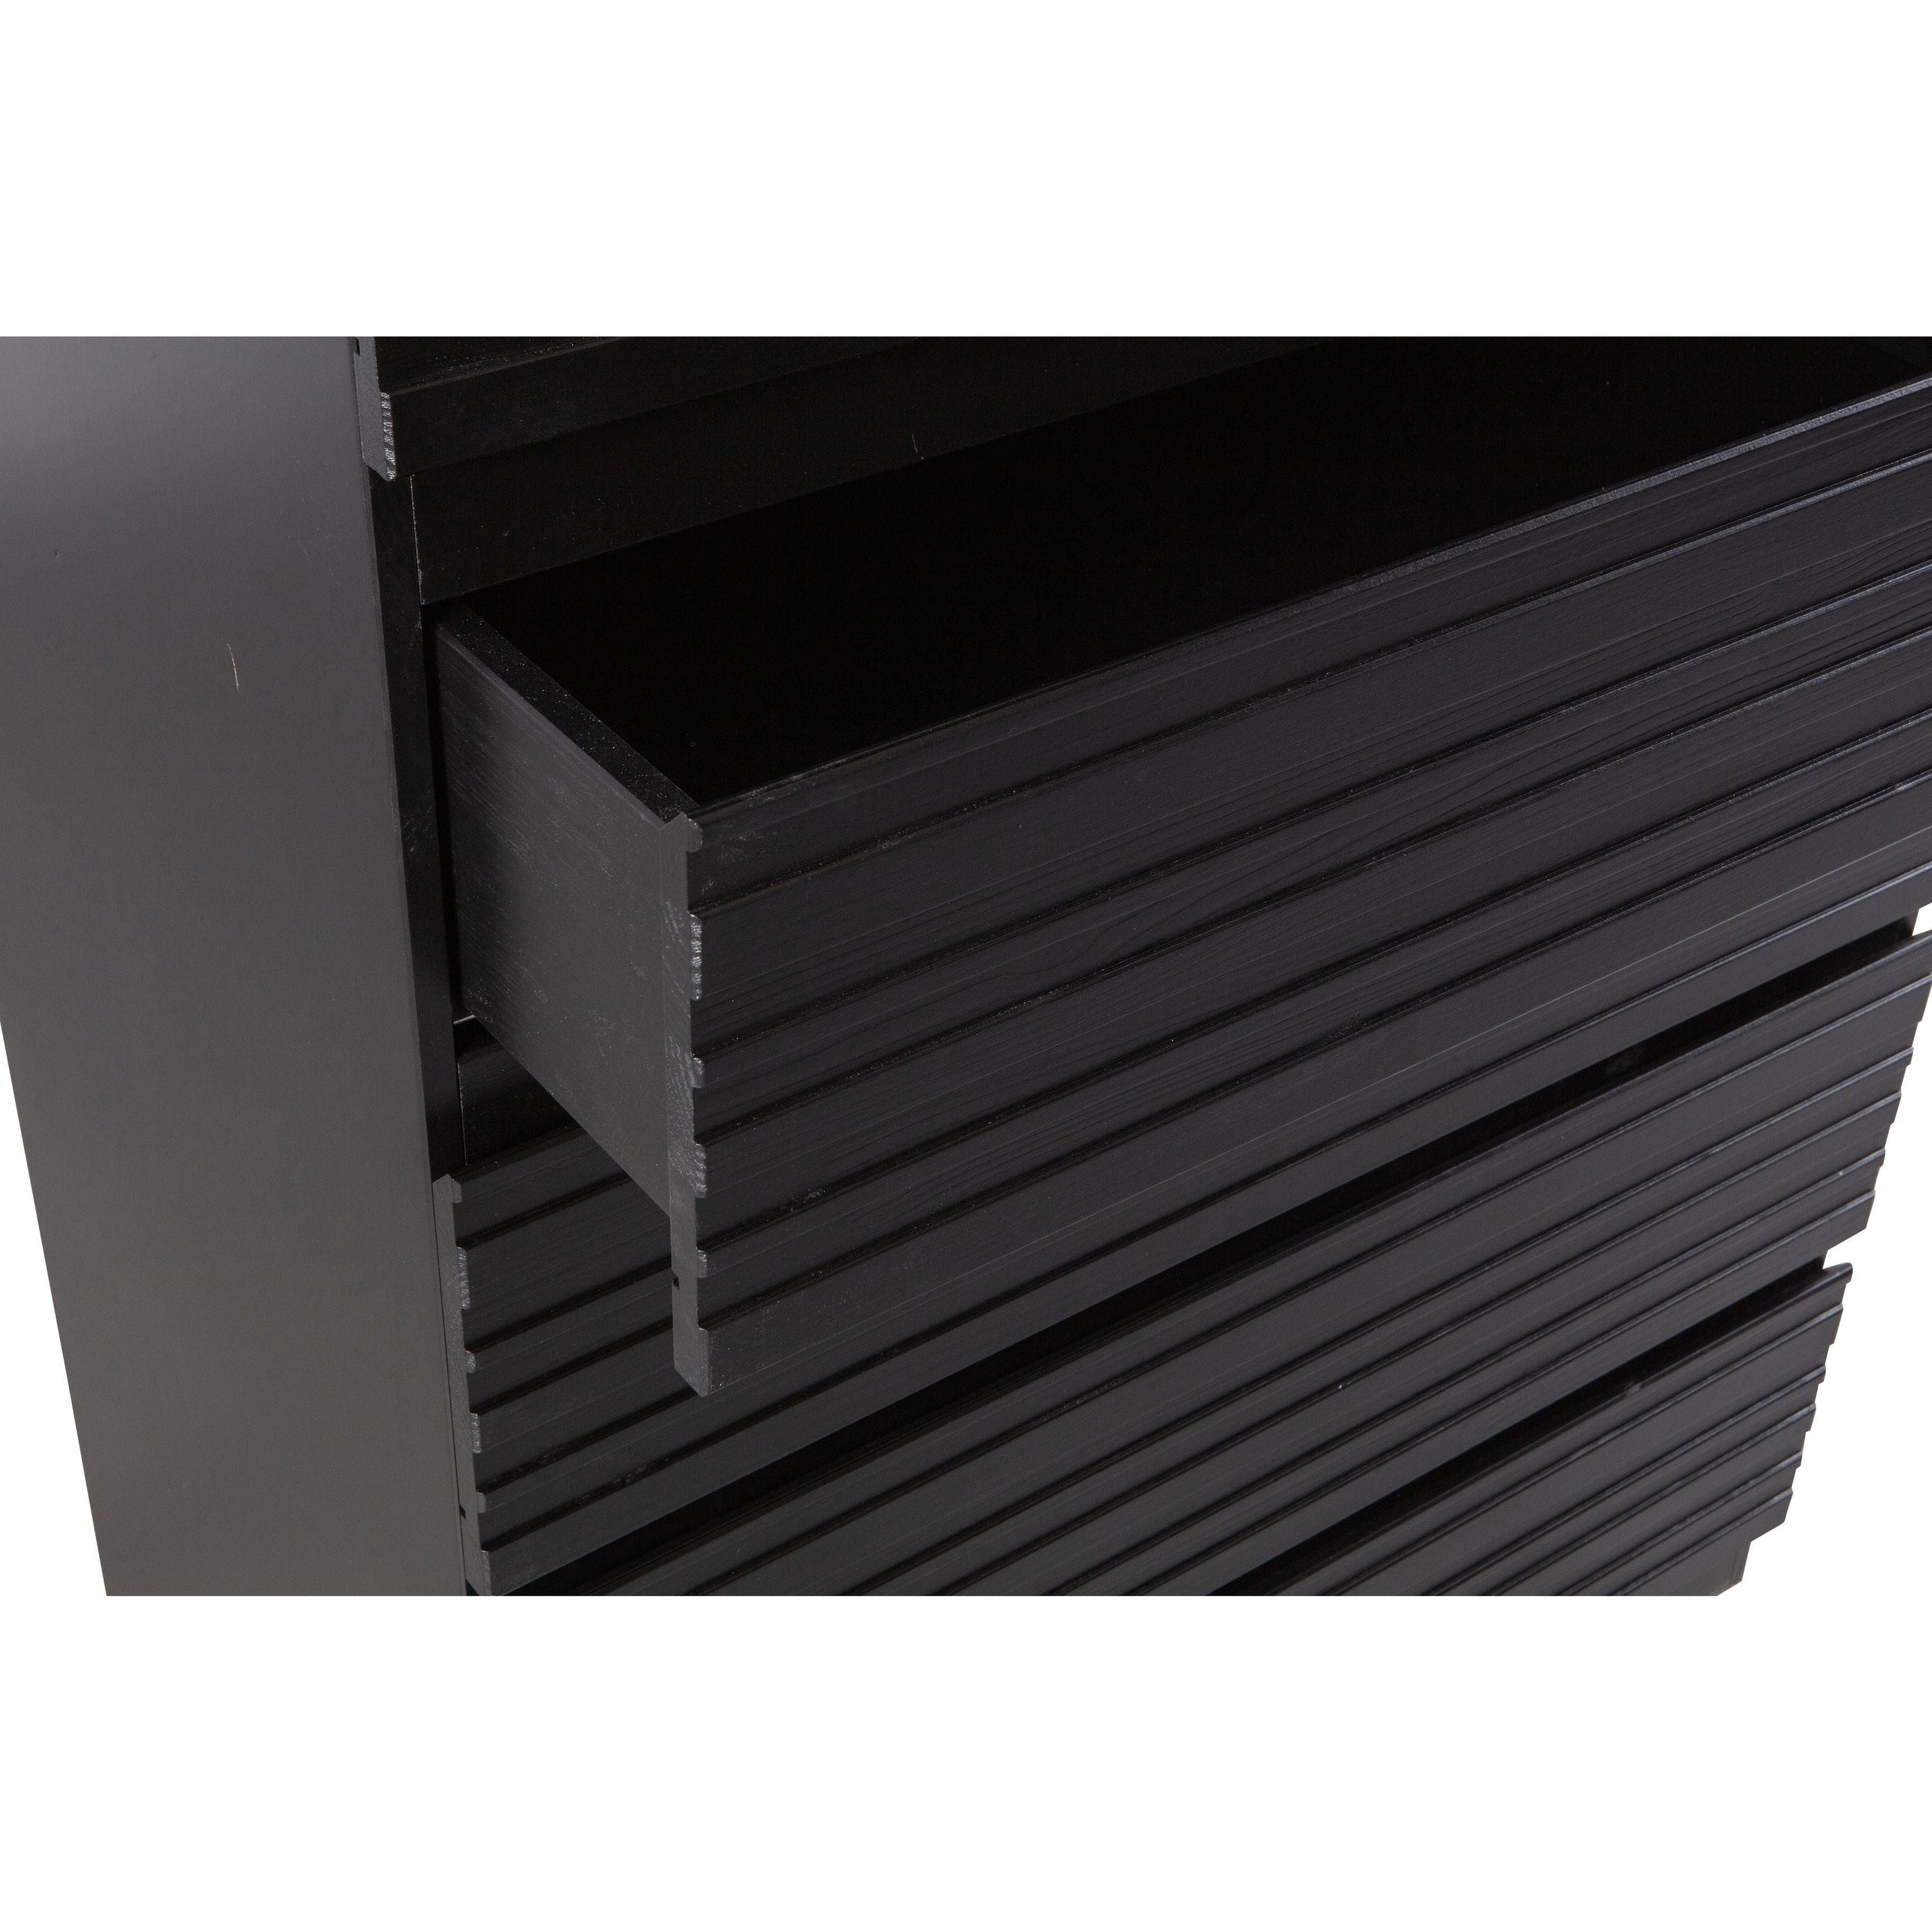 Komoda "JENTE" su 5 stalčiais, 120x83x46 cm juoda spalva, mediena (FSC)